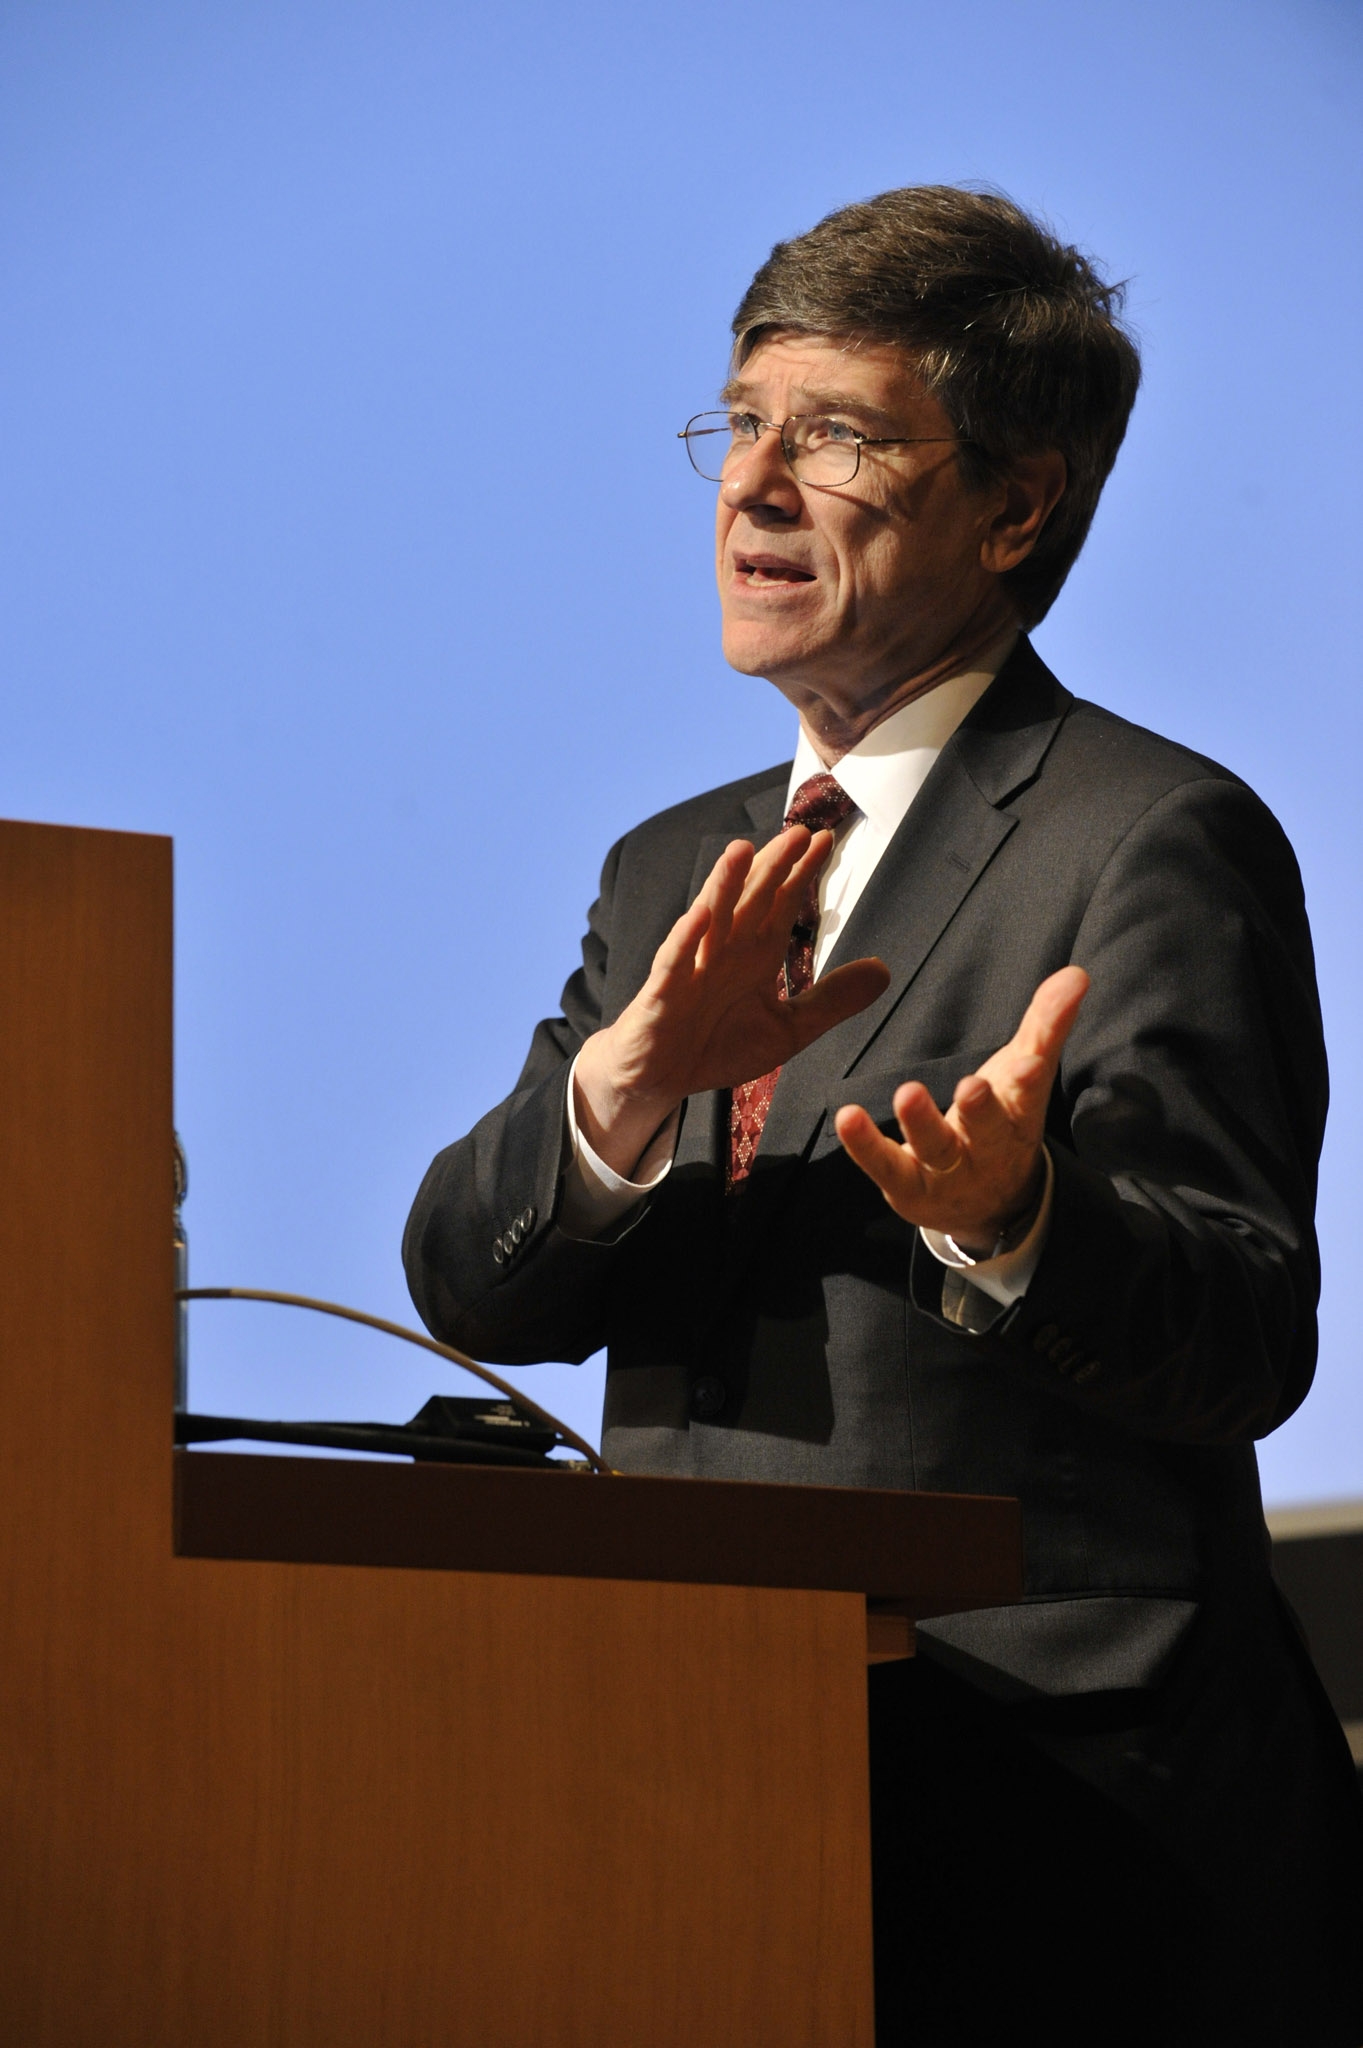 Nhà kinh tế Jeffrey Sachs, giám đốc Viện Trái đất. Ảnh: harvard.edu.